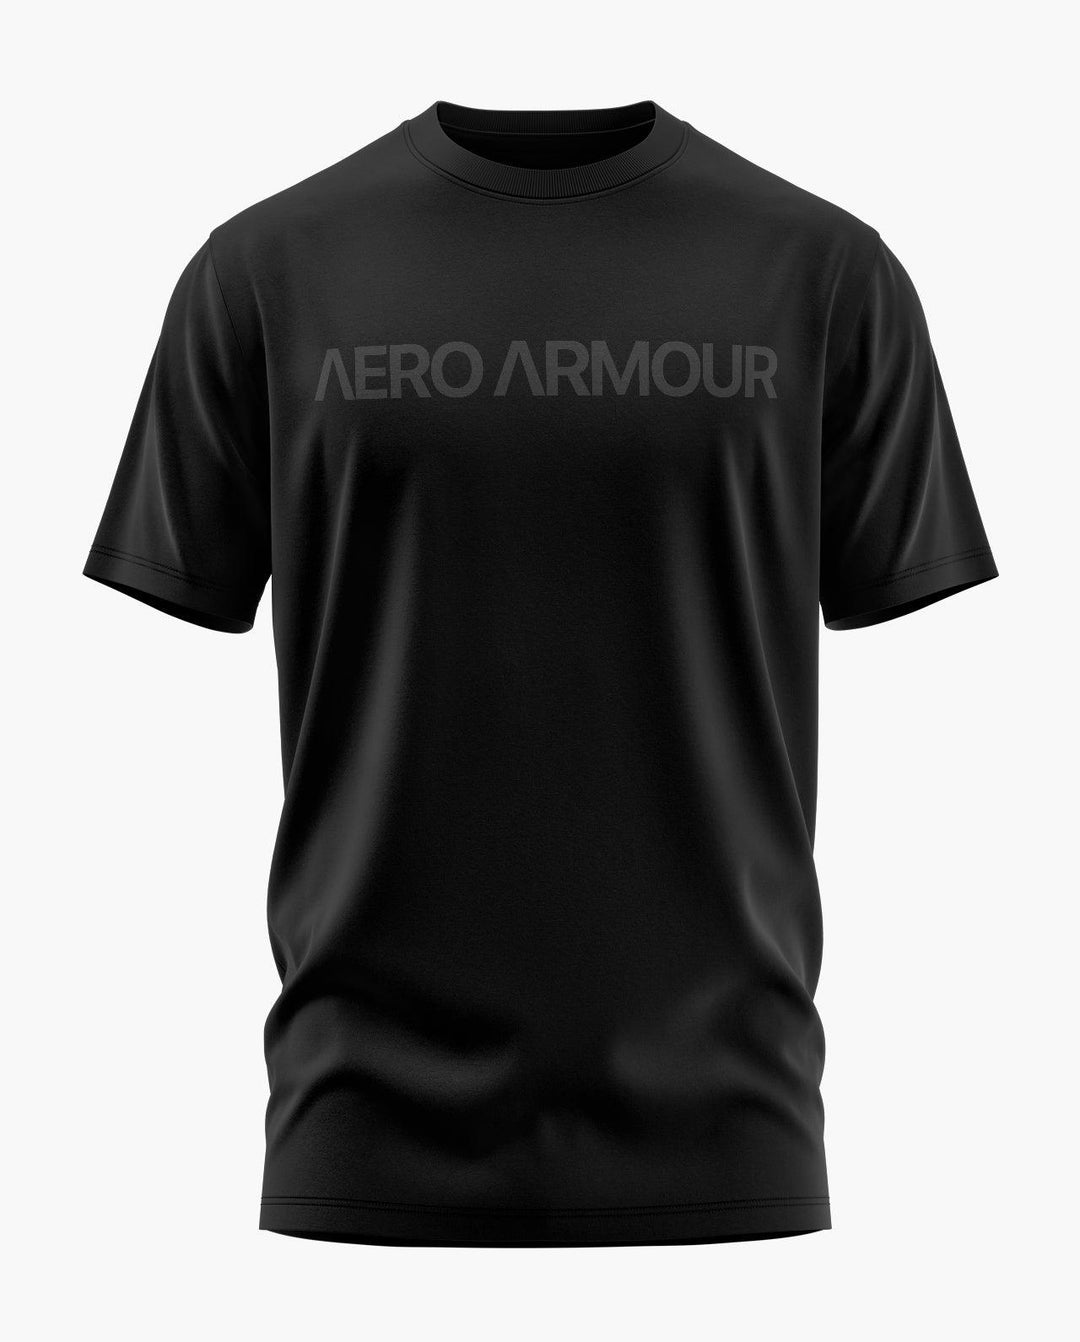 Aero Armour Classique T-Shirt - Aero Armour